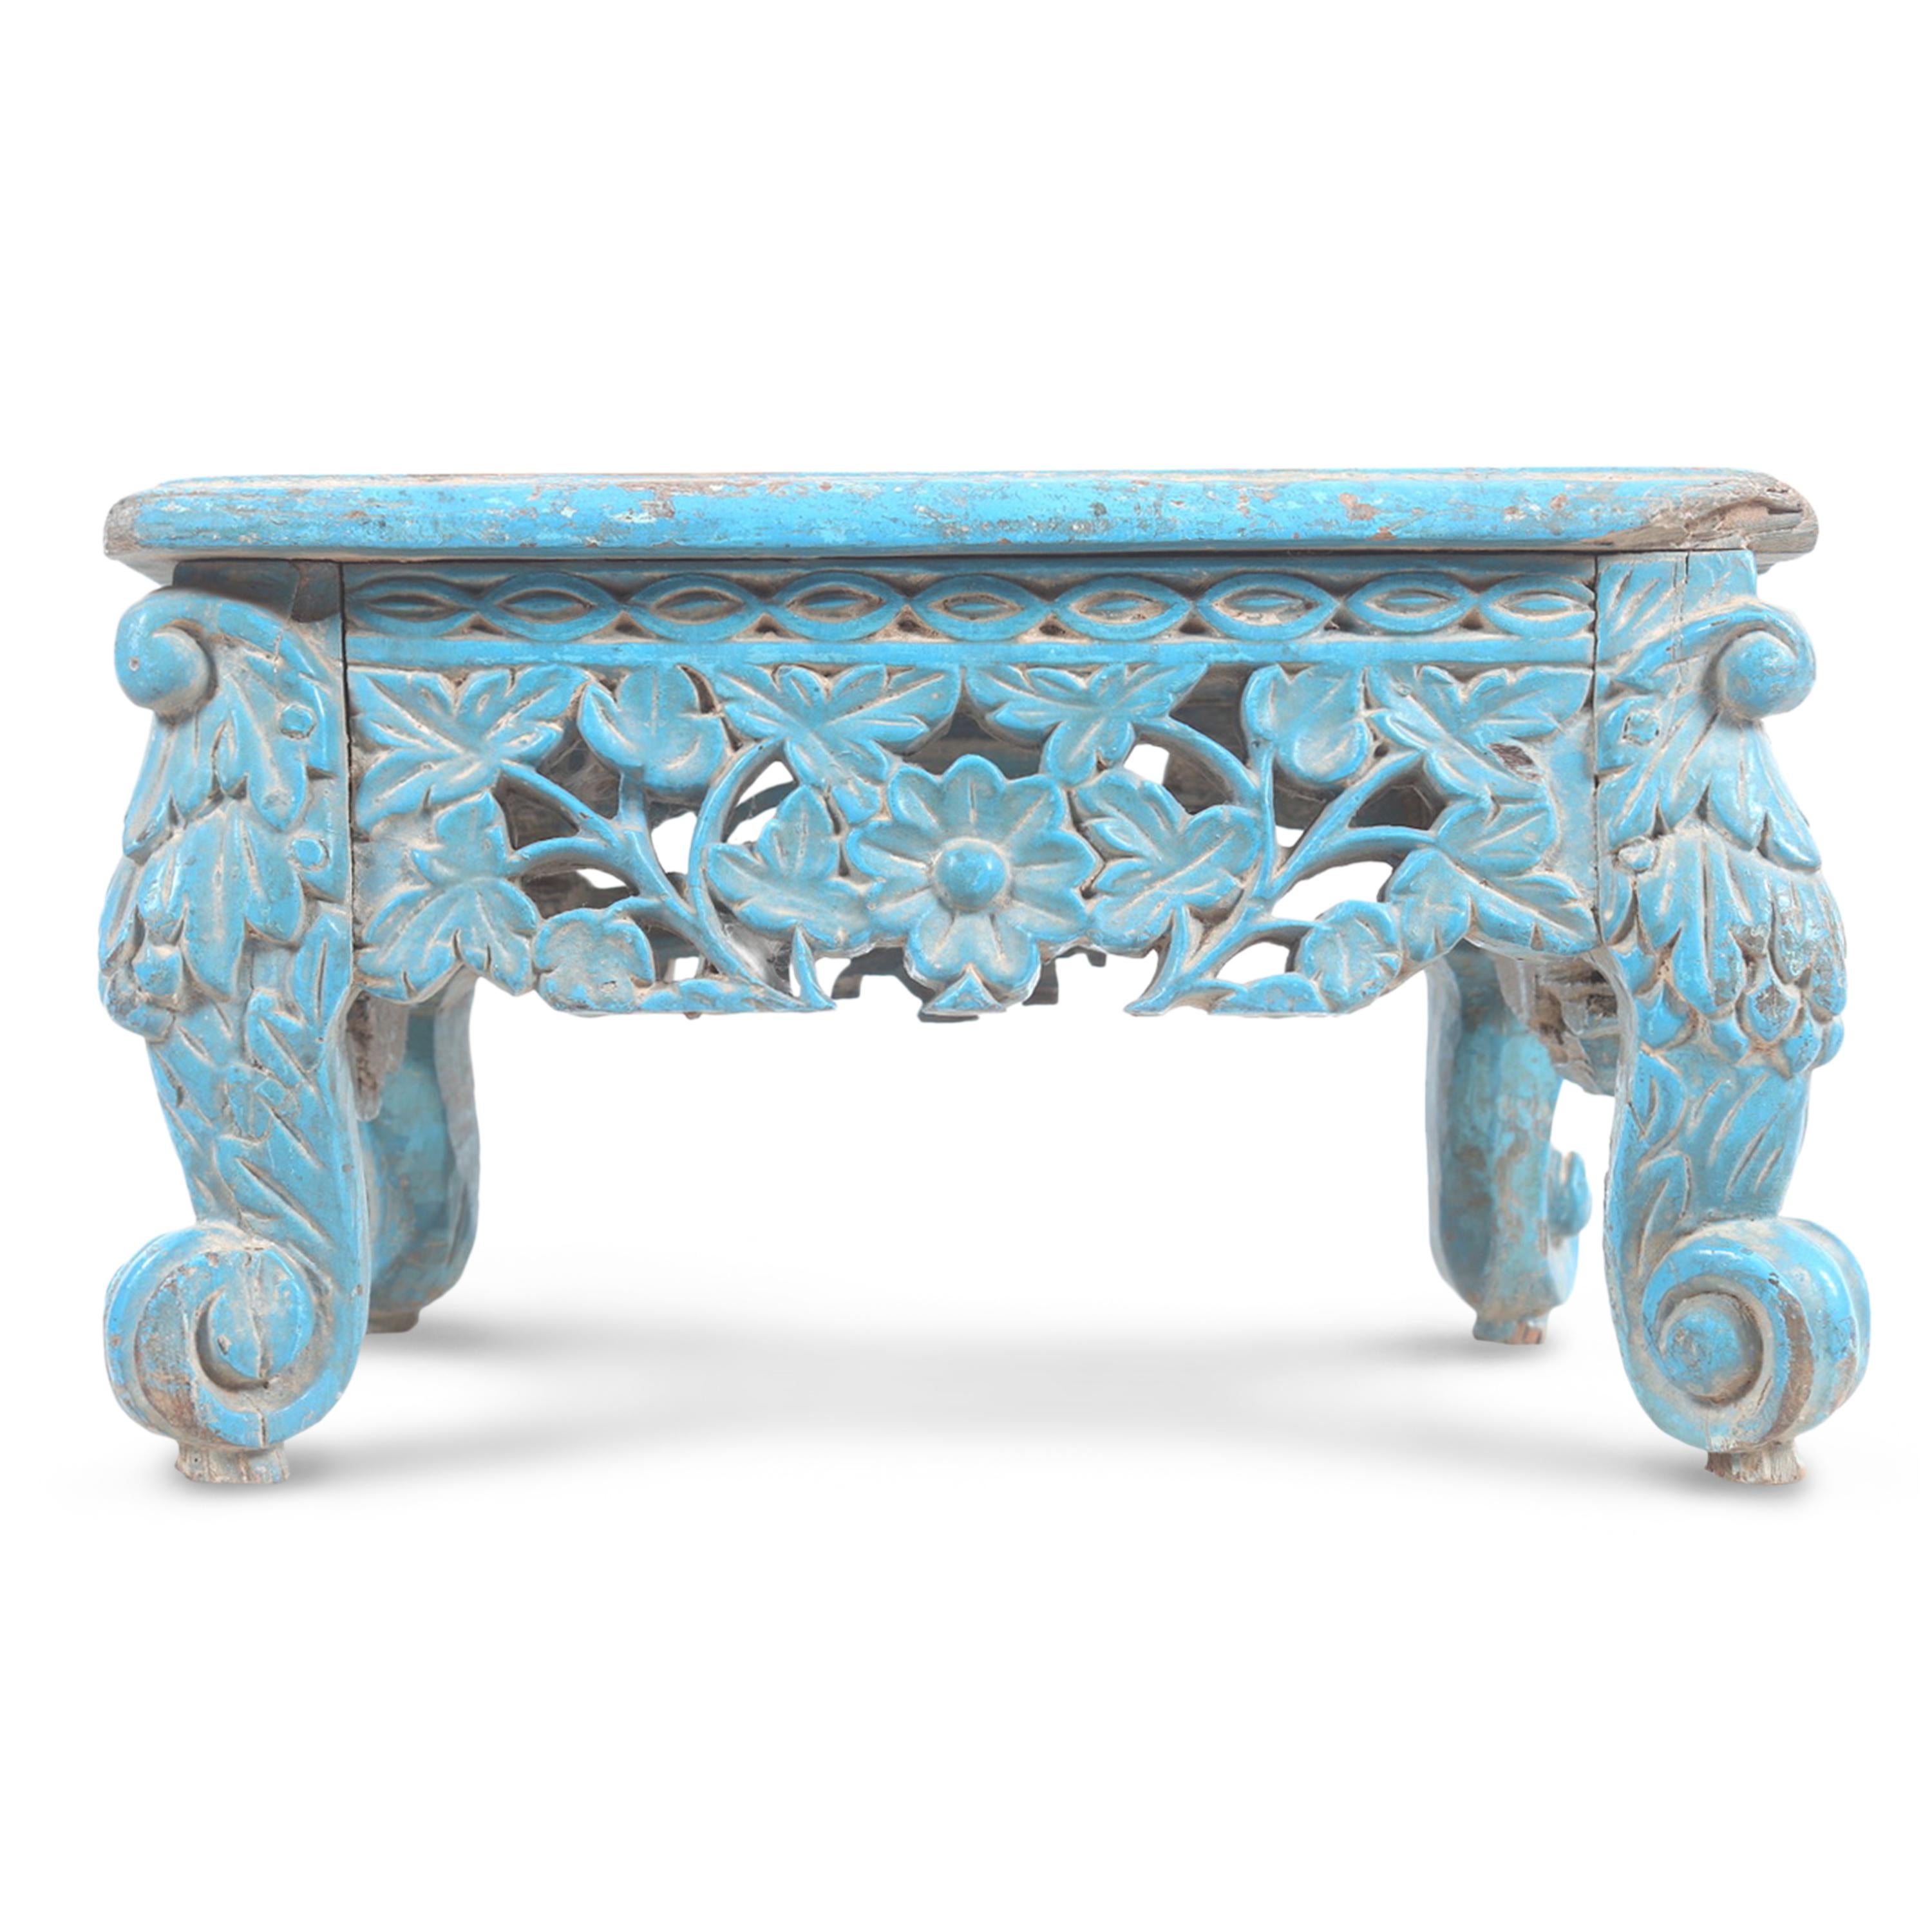 Table/tabouret unique en bois de teck sculpté anglo-indien. Sa peinture bleue d'origine, ses détails exceptionnellement sculptés et sa patine vieillie confèrent à cette pièce une personnalité distincte.